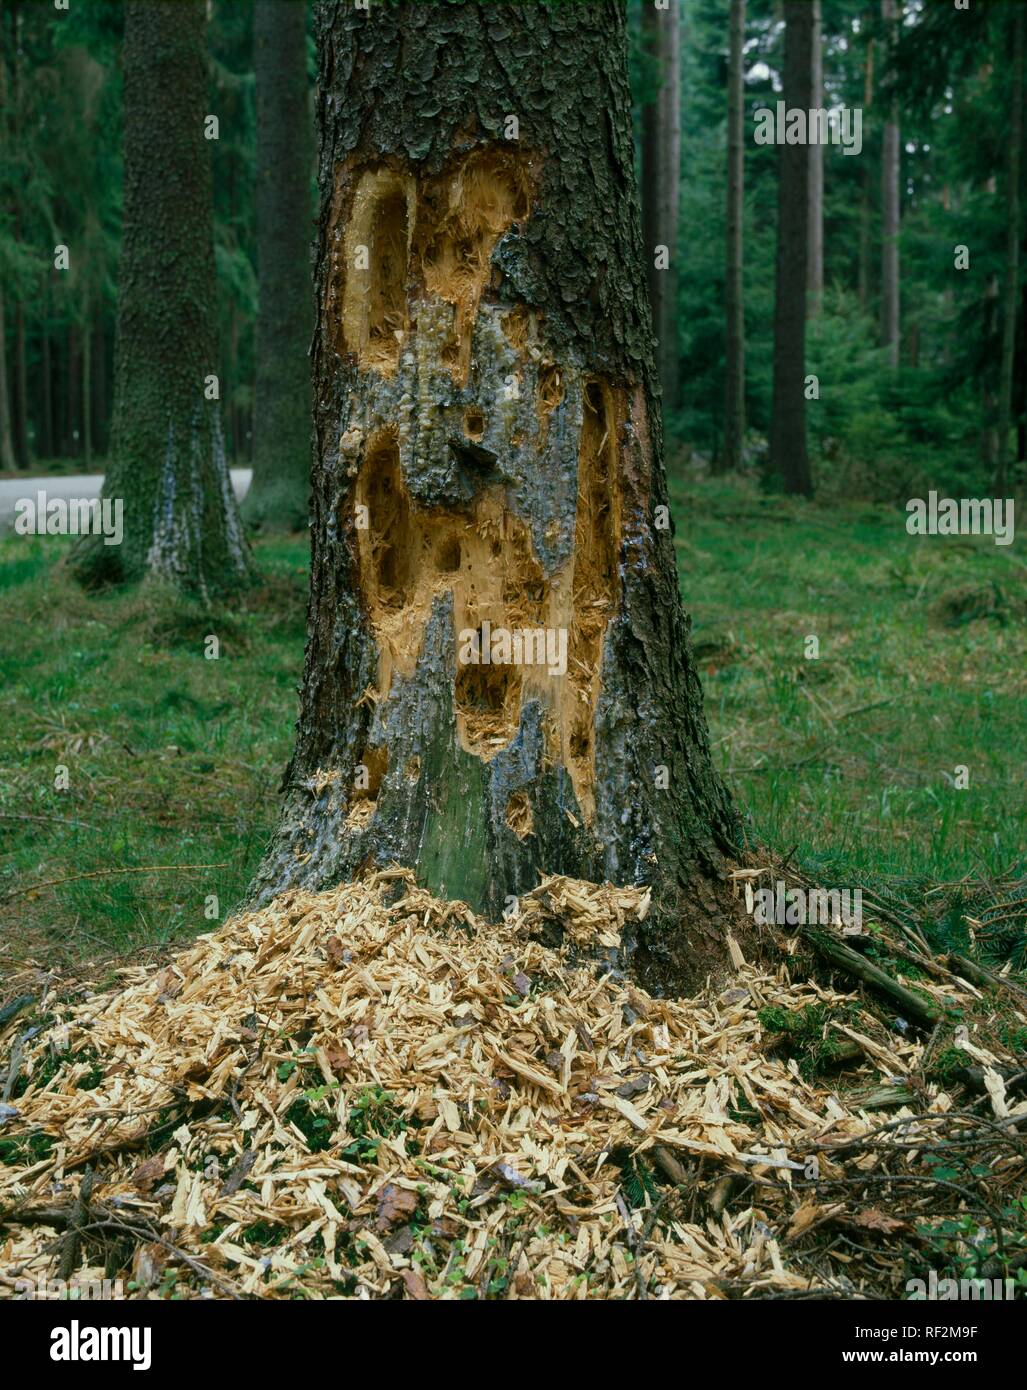 Tree damaged by bark beetles (Scolytinae) Stock Photo